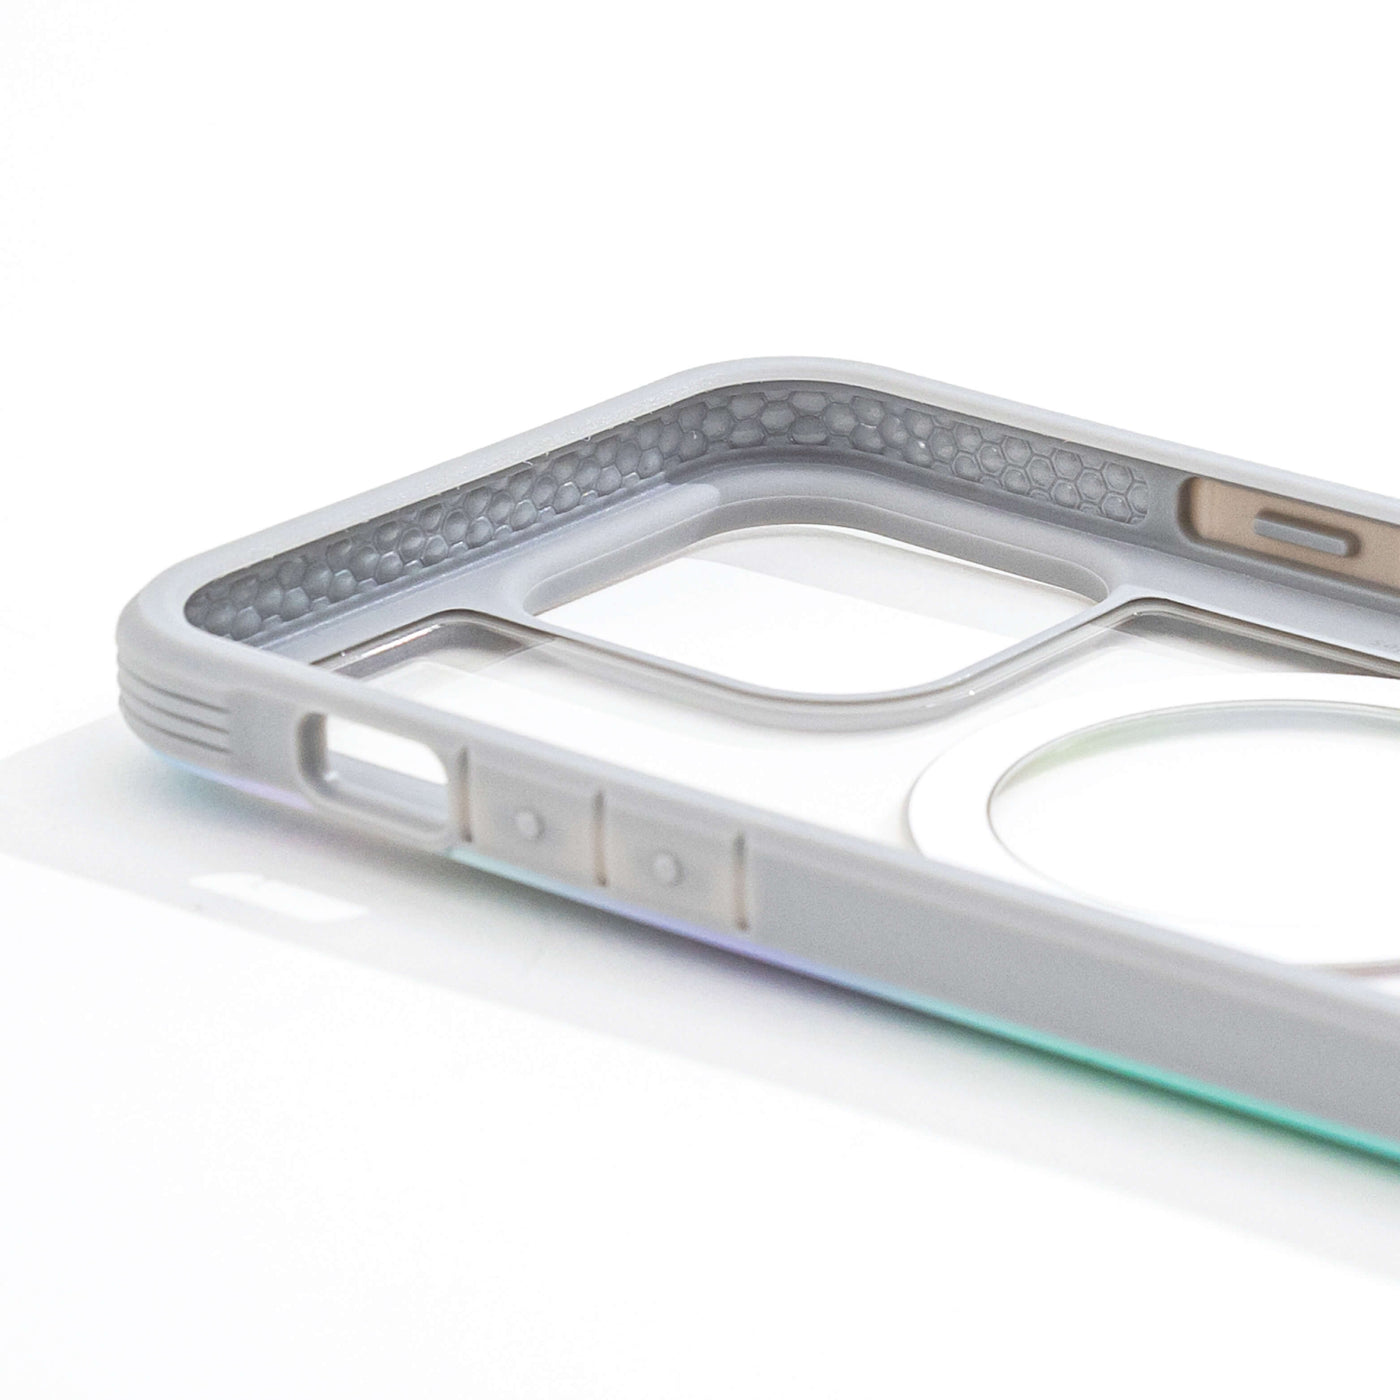 iPhone 15 Pro Max Case - Shield 2.0 Quartz